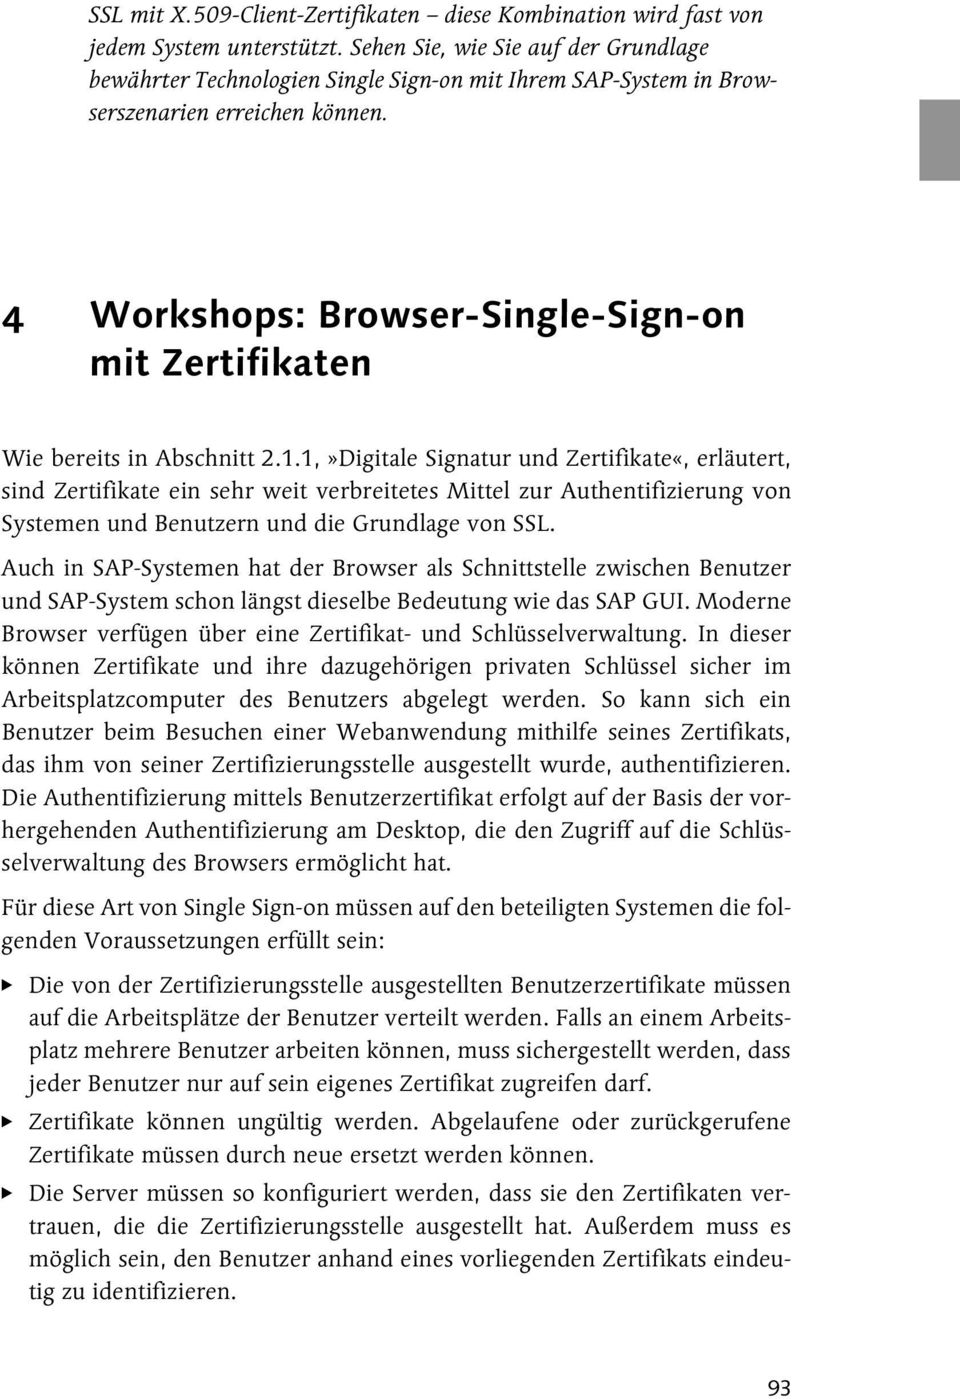 4 Workshops: Browser-Single-Sign-on mit Zertifikaten Wie bereits in Abschnitt 2.1.